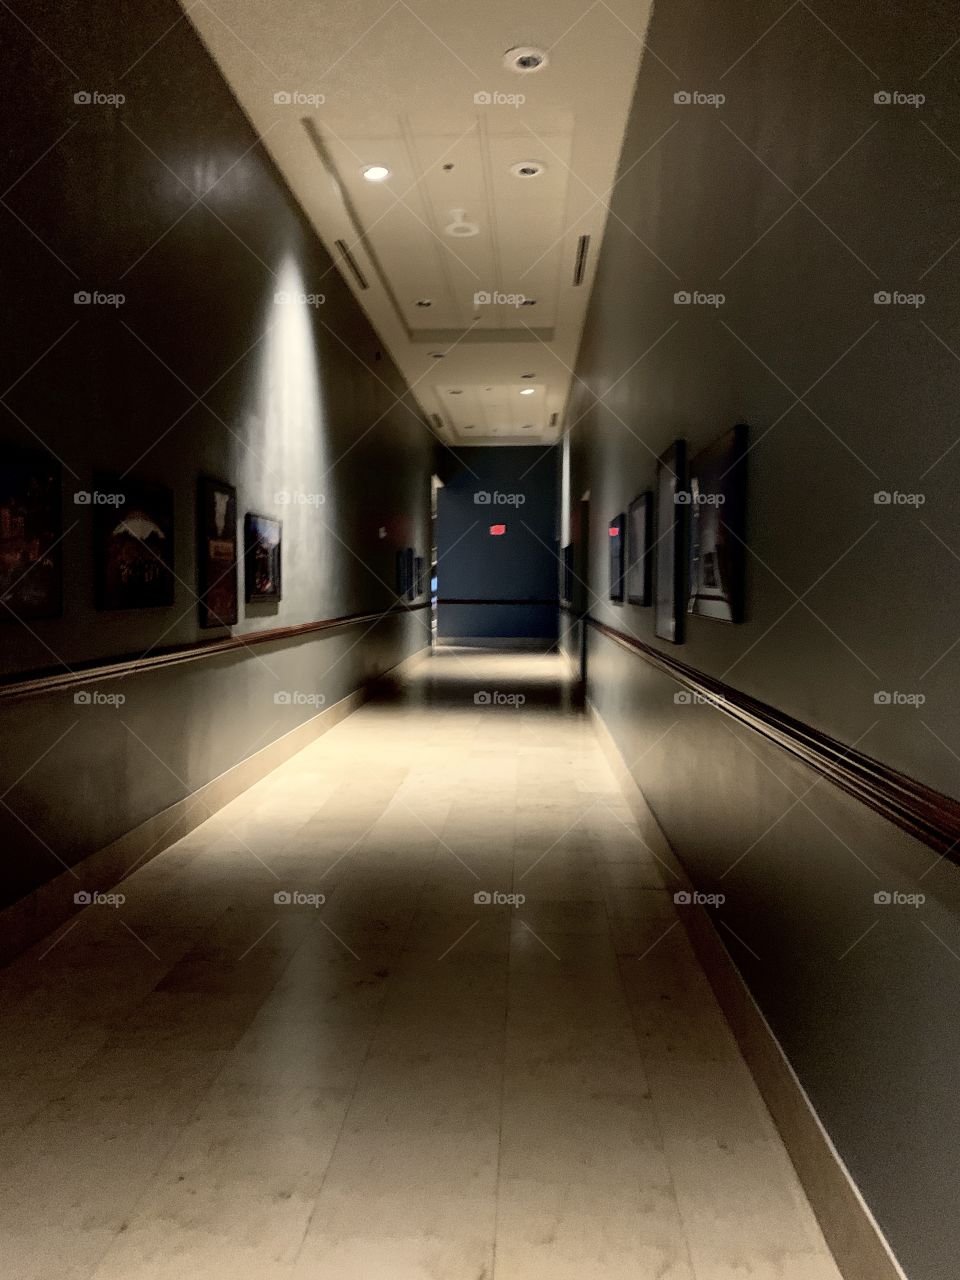 A long dark scary hallway